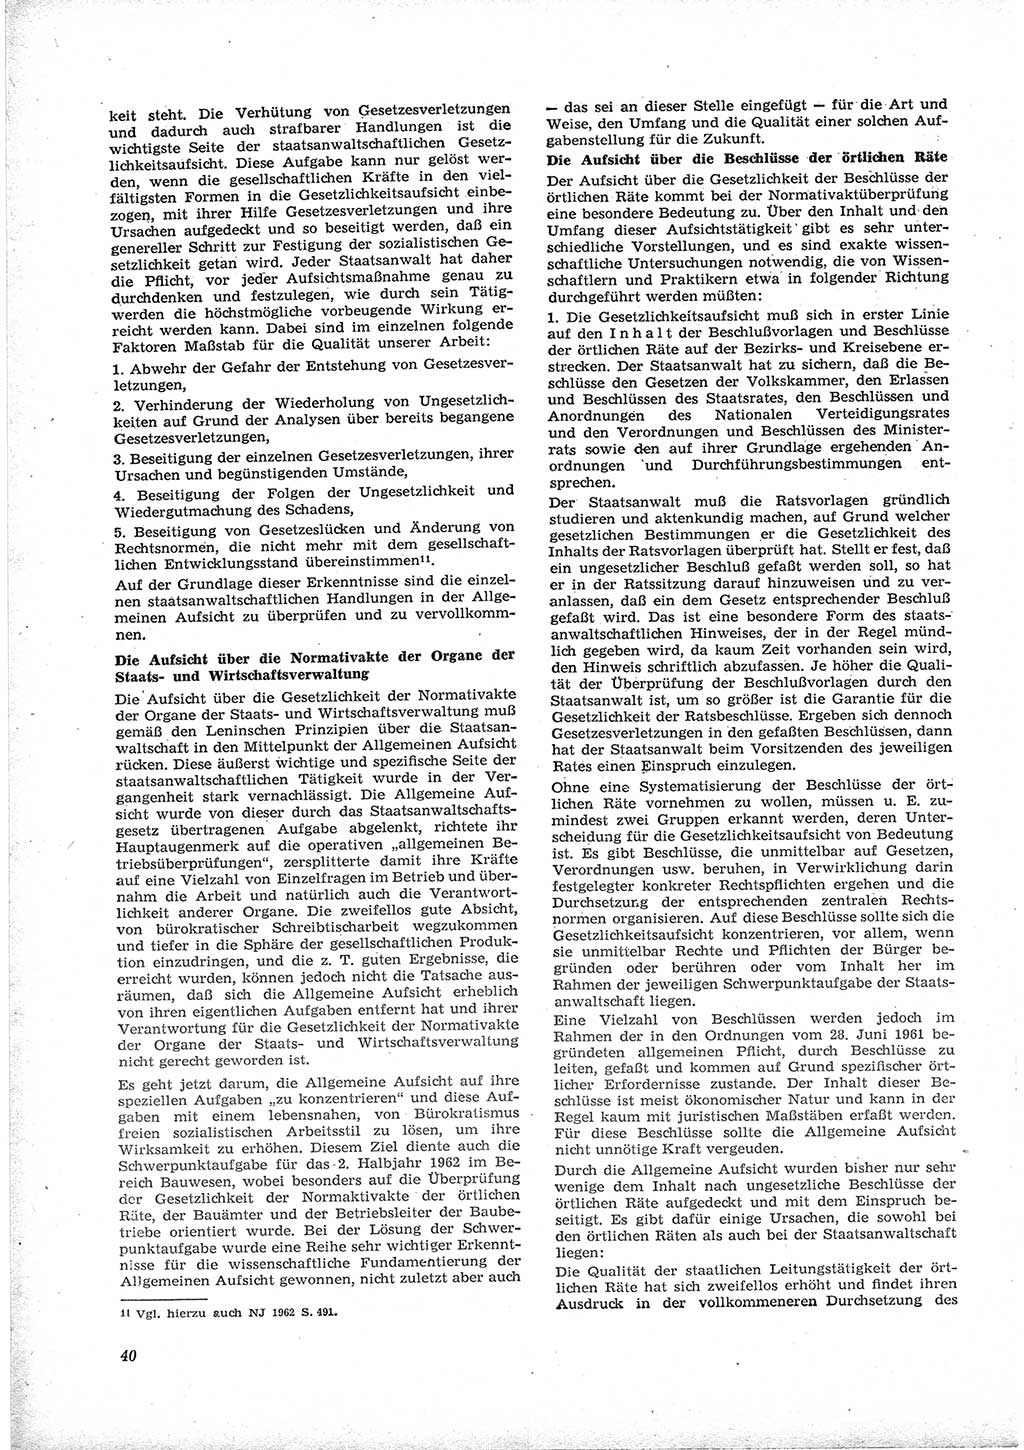 Neue Justiz (NJ), Zeitschrift für Recht und Rechtswissenschaft [Deutsche Demokratische Republik (DDR)], 17. Jahrgang 1963, Seite 40 (NJ DDR 1963, S. 40)